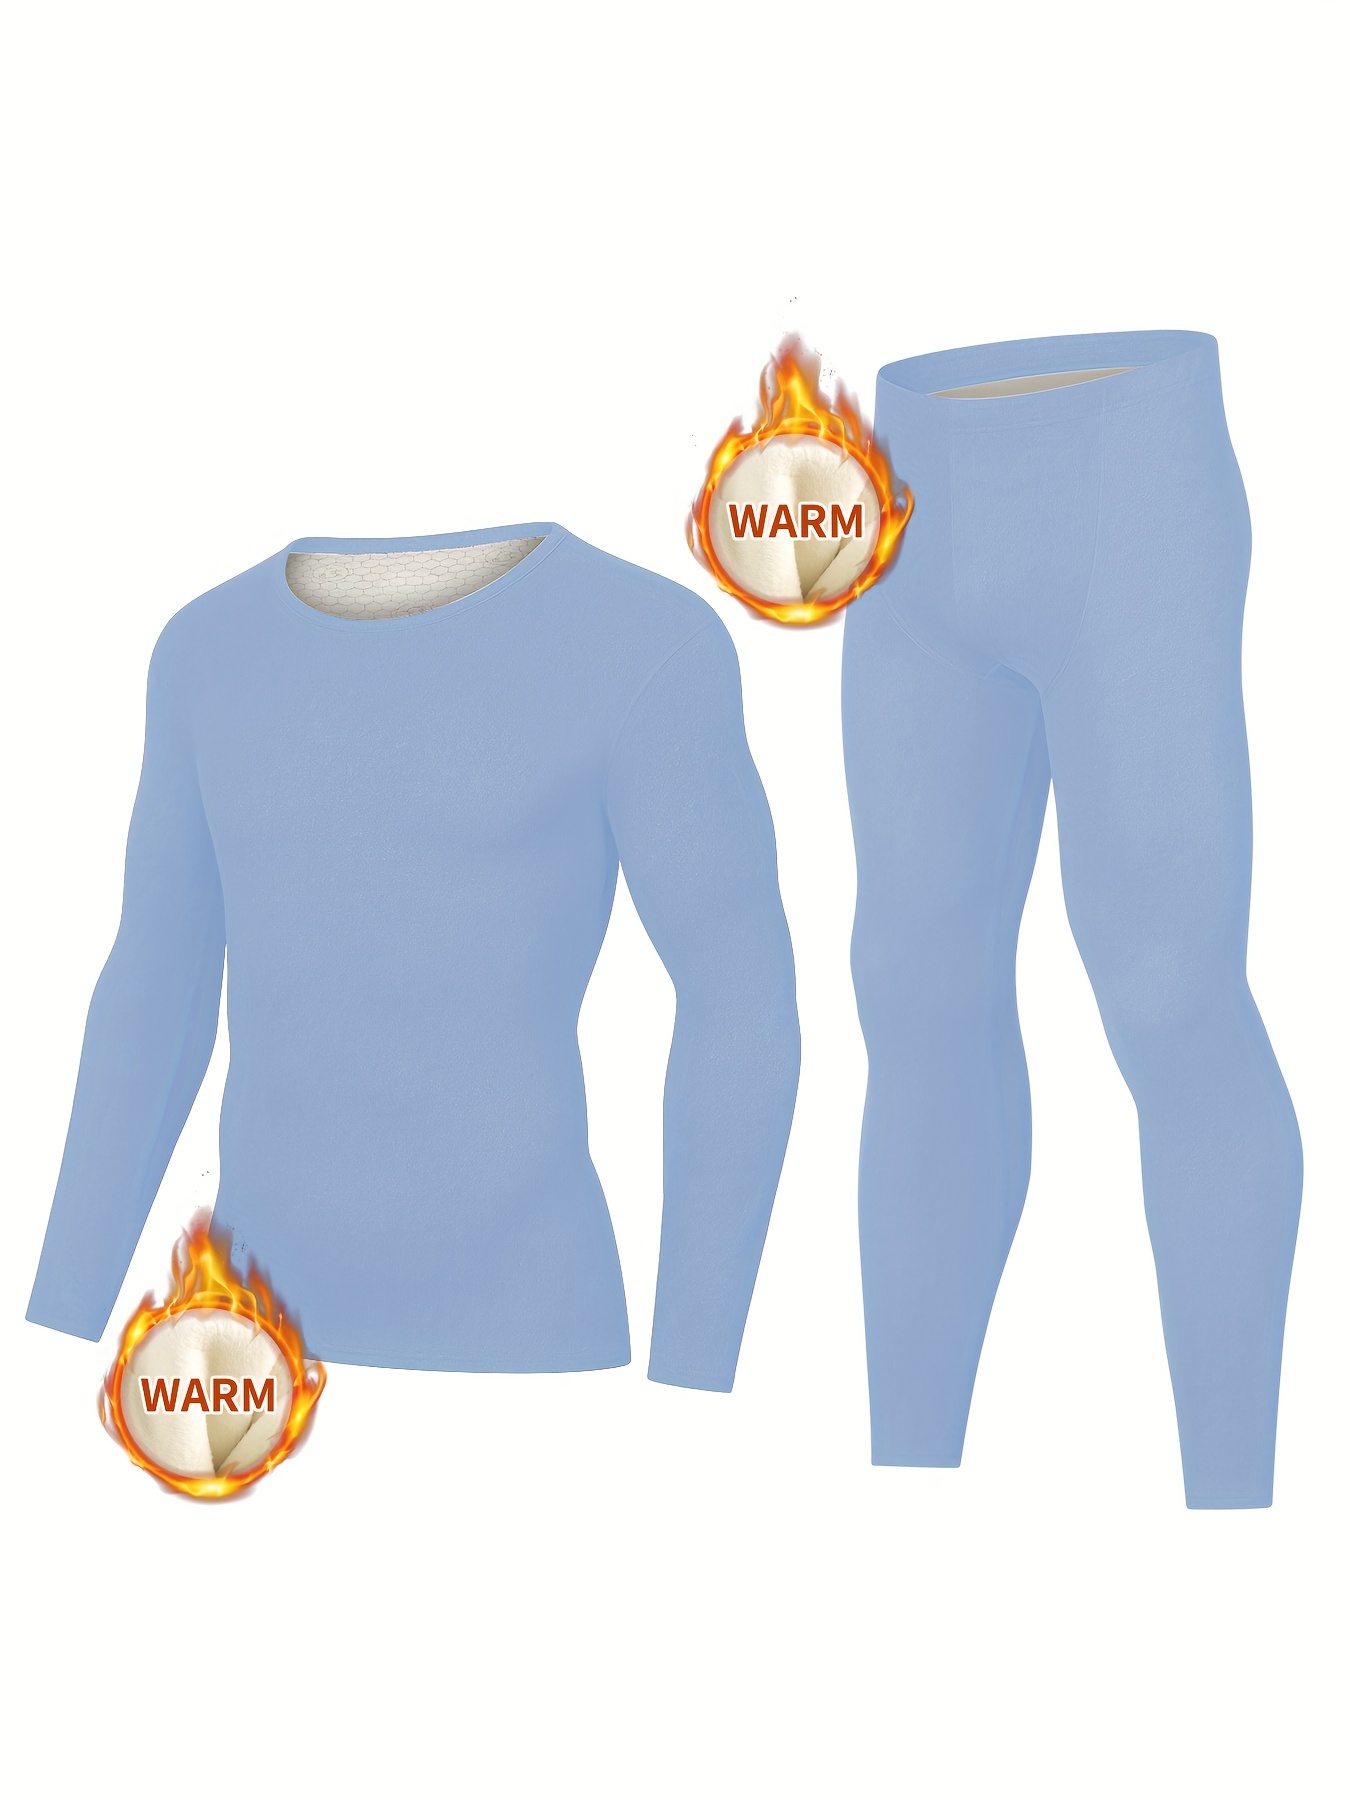 Conjunto ropa interior térmica clima frío para hombre ultrasuaves Ropa Warm  S-XL